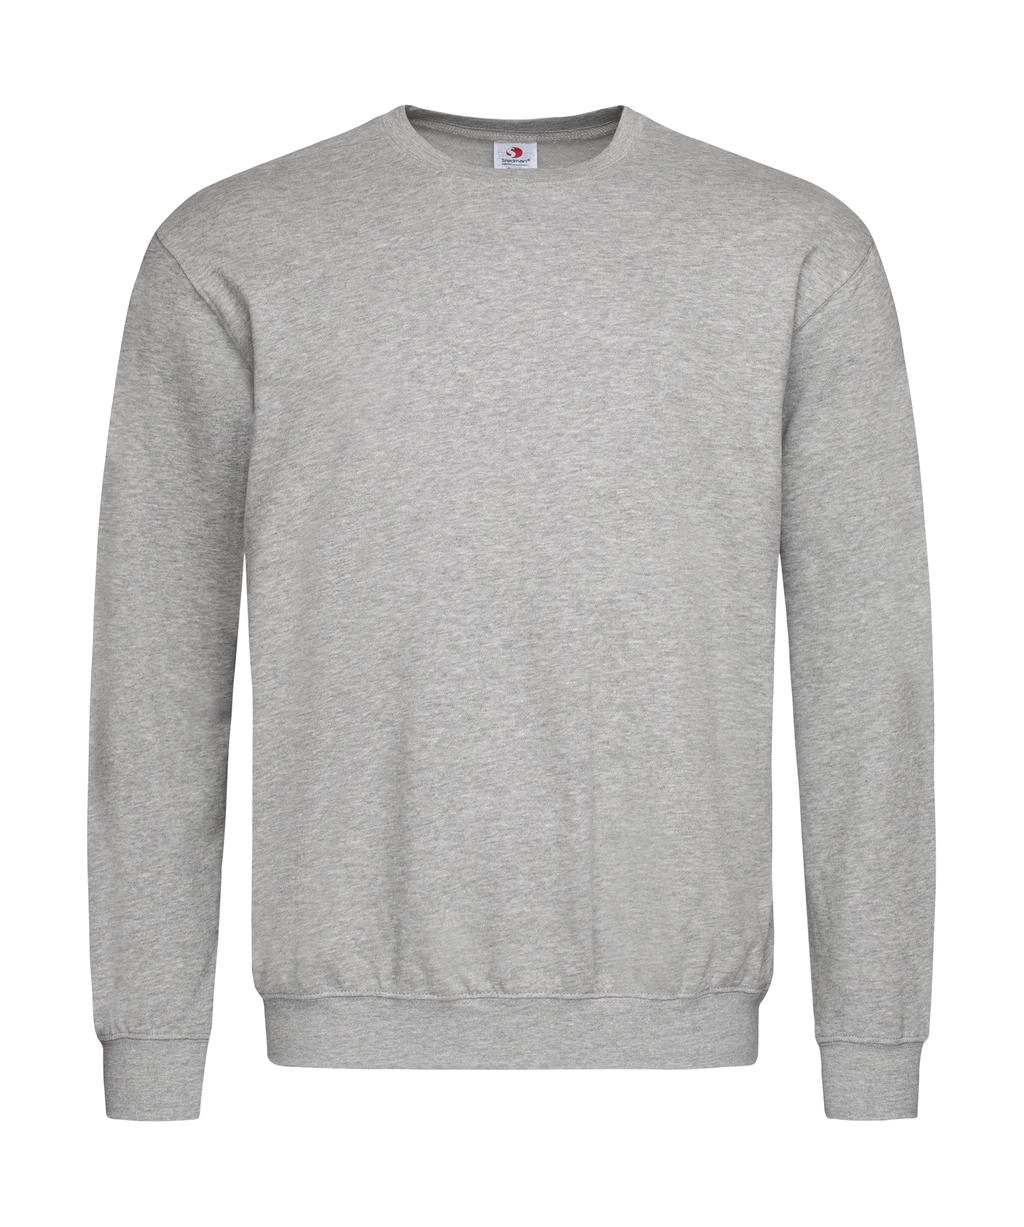 Unisex Sweatshirt Classic zum Besticken und Bedrucken in der Farbe Grey Heather mit Ihren Logo, Schriftzug oder Motiv.